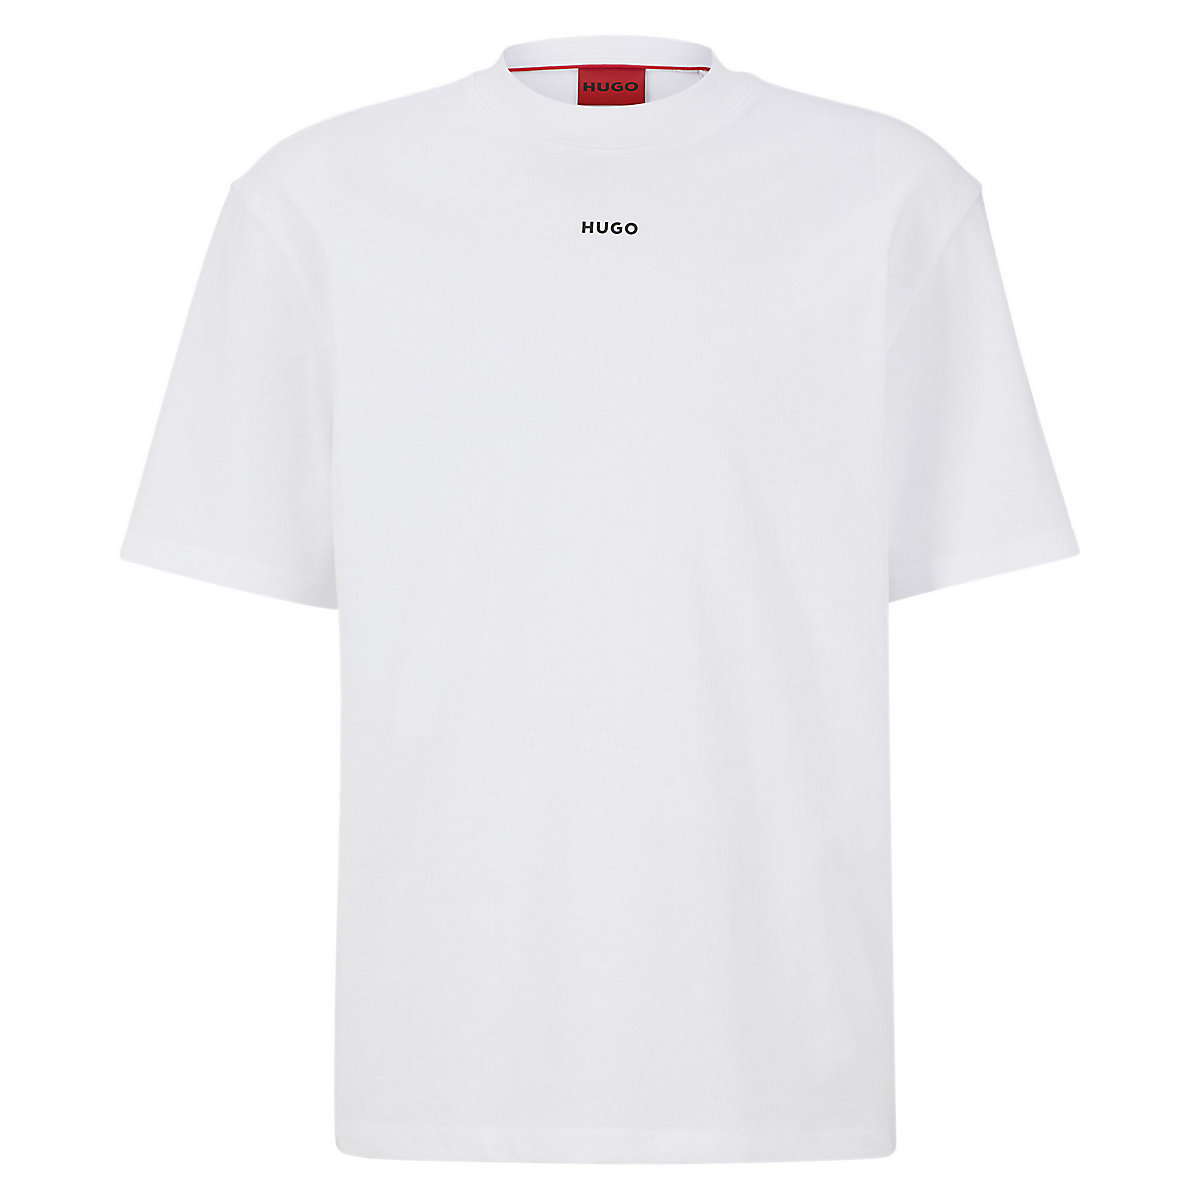 HUGO Herren T-Shirt DAPOLINO Rundhals Kurzarm Logo Baumwolle T-Shirts weiß